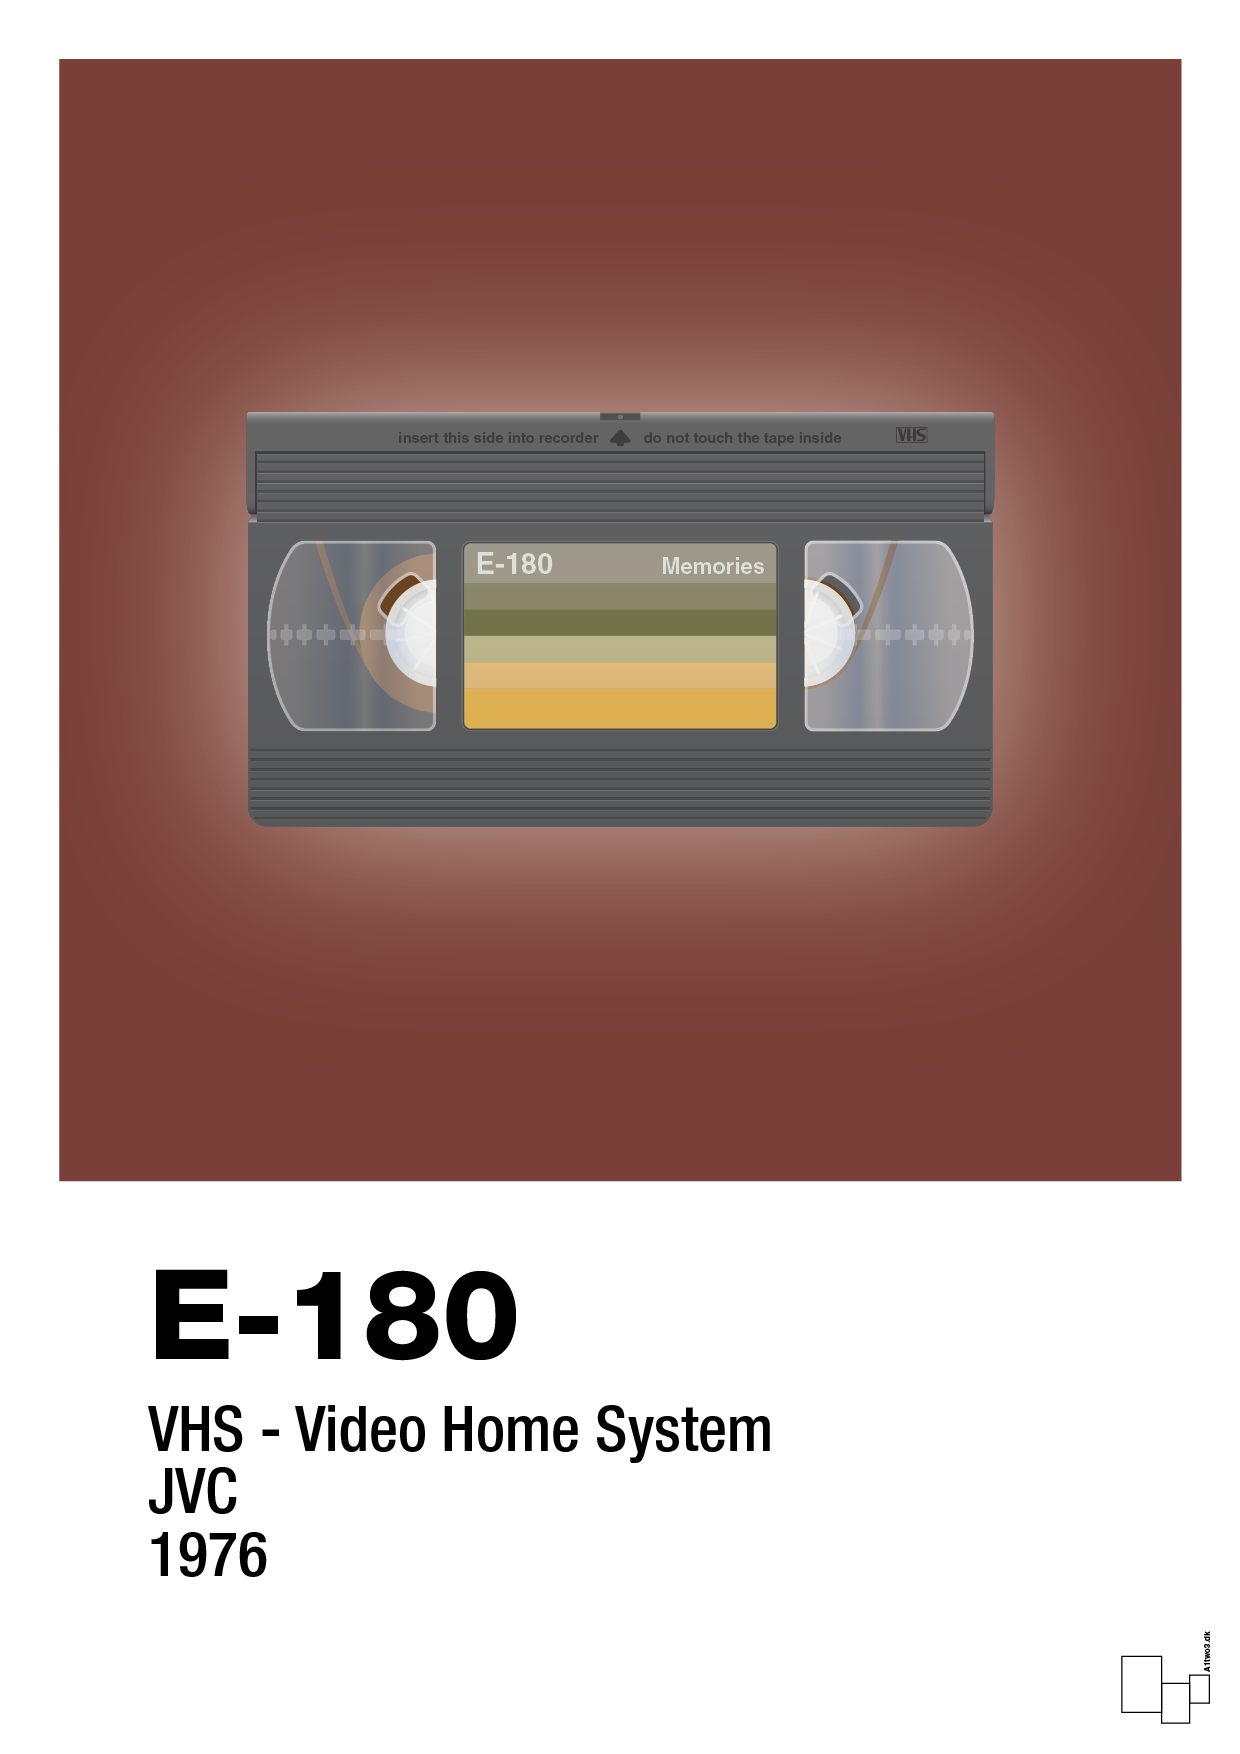 videobånd e-180 - Plakat med Grafik i Red Pepper